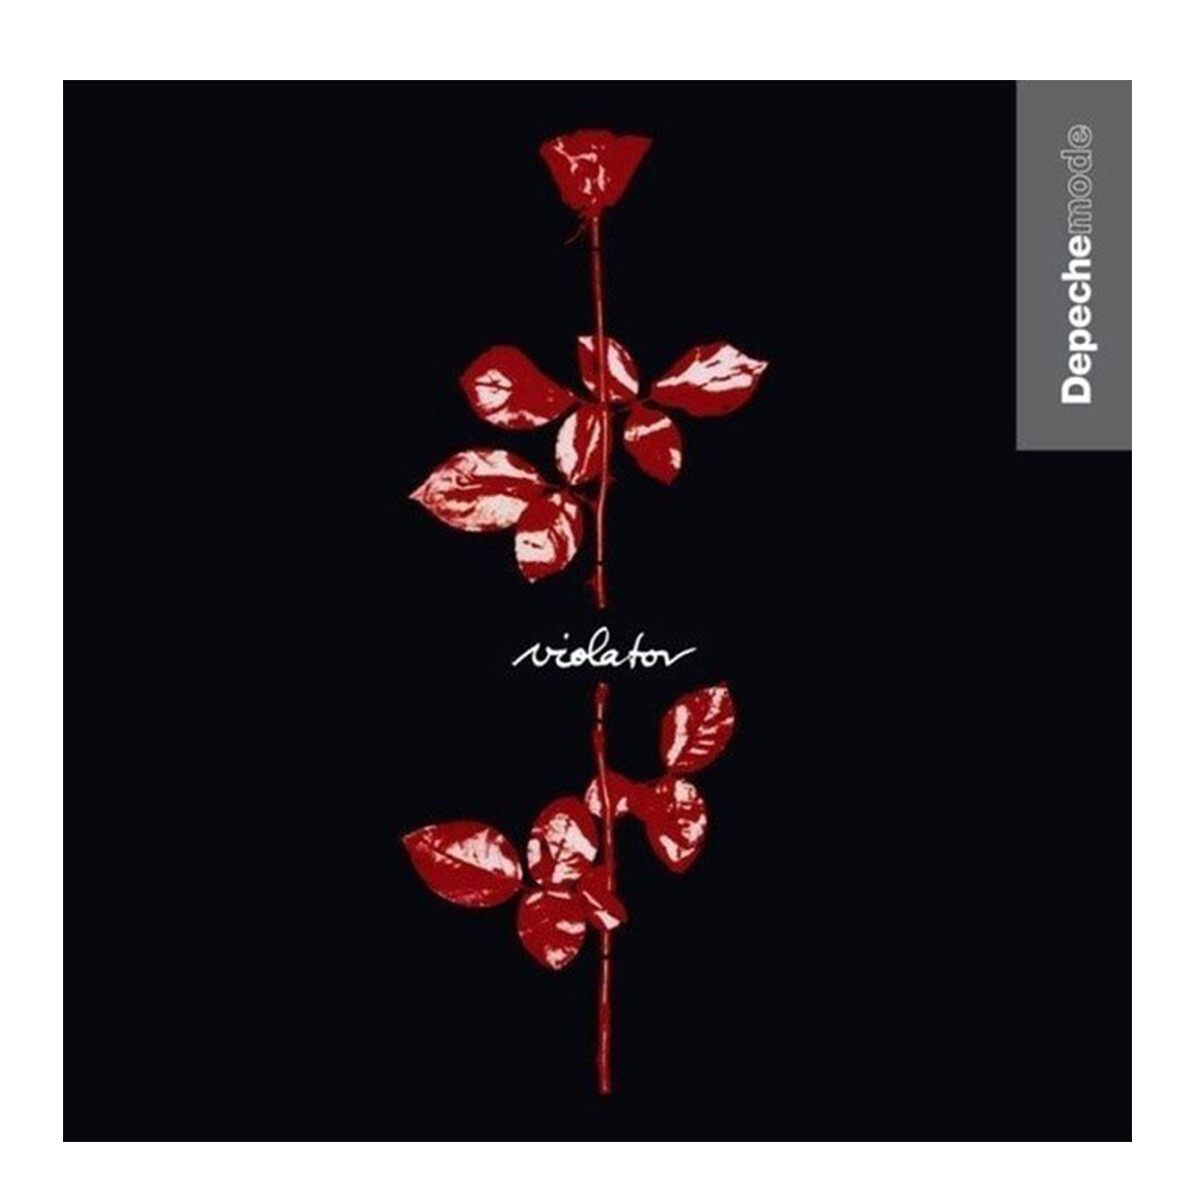 Depeche Mode-violator - Vinilo 